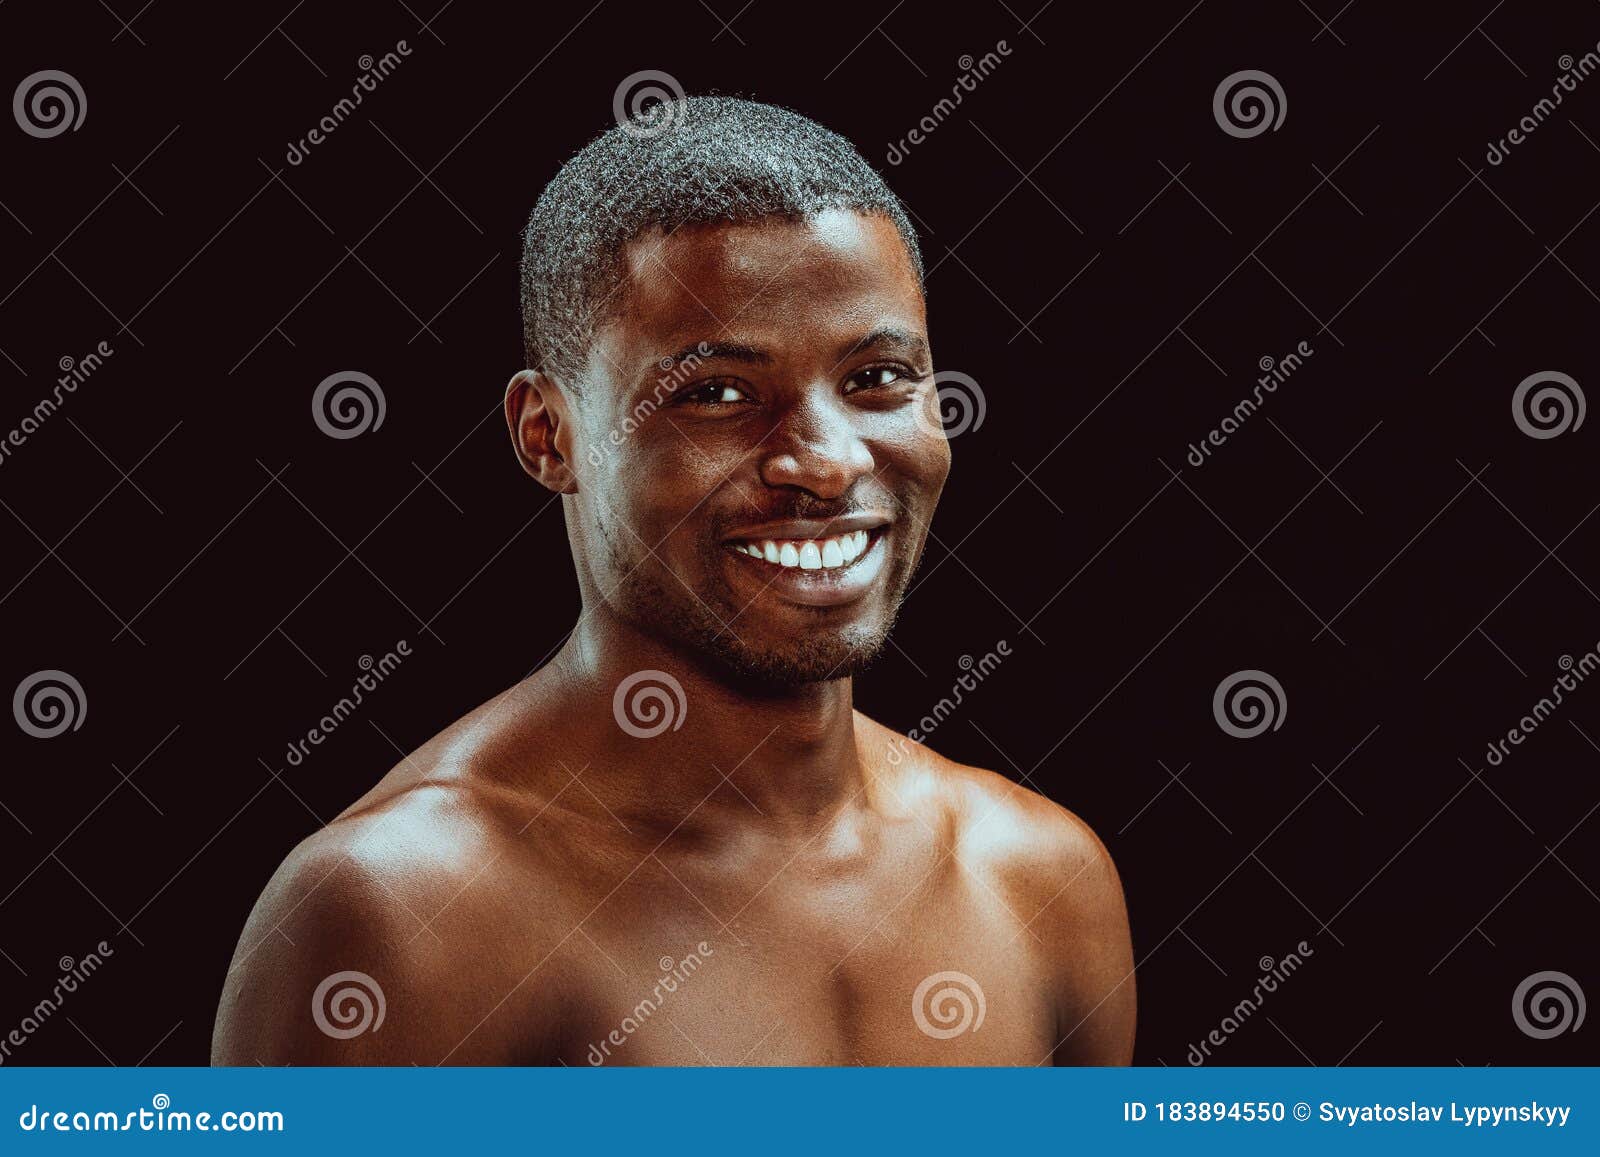 裸体躯干的肌肉非洲裔美国人或拉丁裔工作室肖像. 男性力量和效力. 库存图片 - 图片 包括有 健身, 黑暗: 226930175